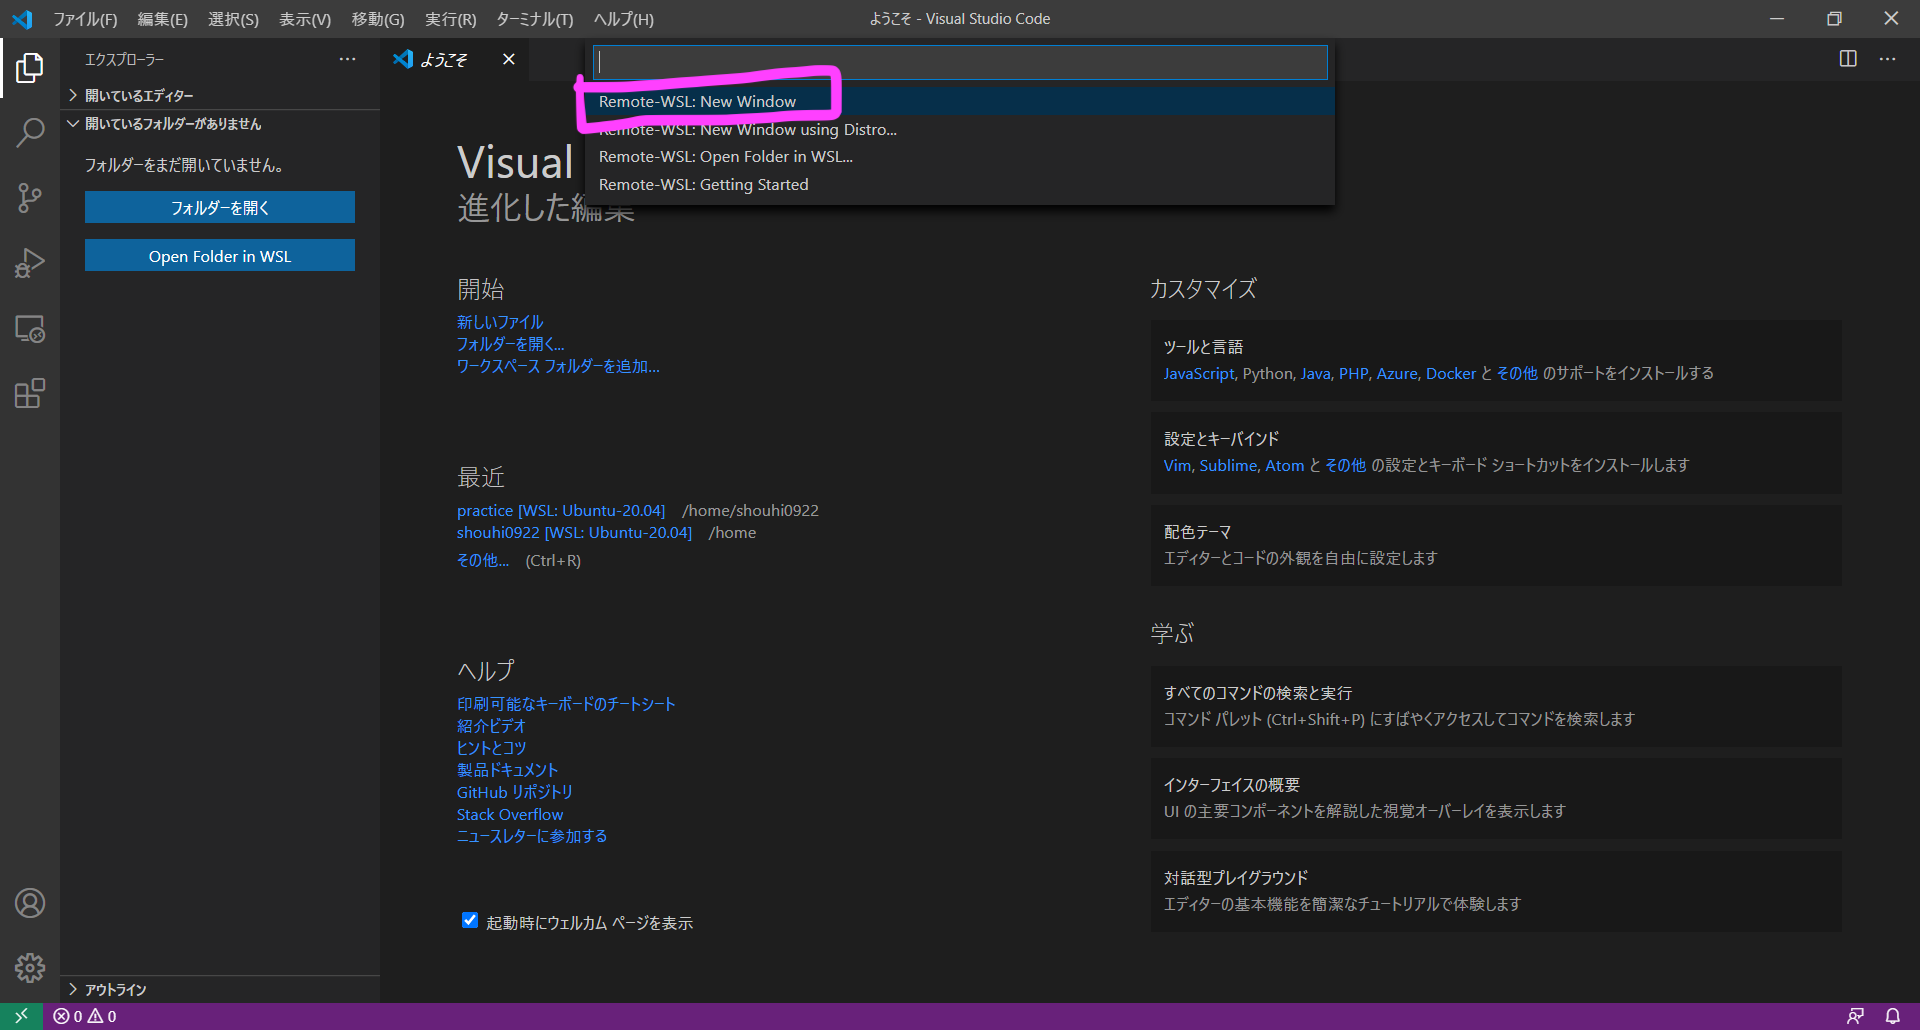 ようこそ - Visual Studio Code 2020_11_17 12_58_18.png